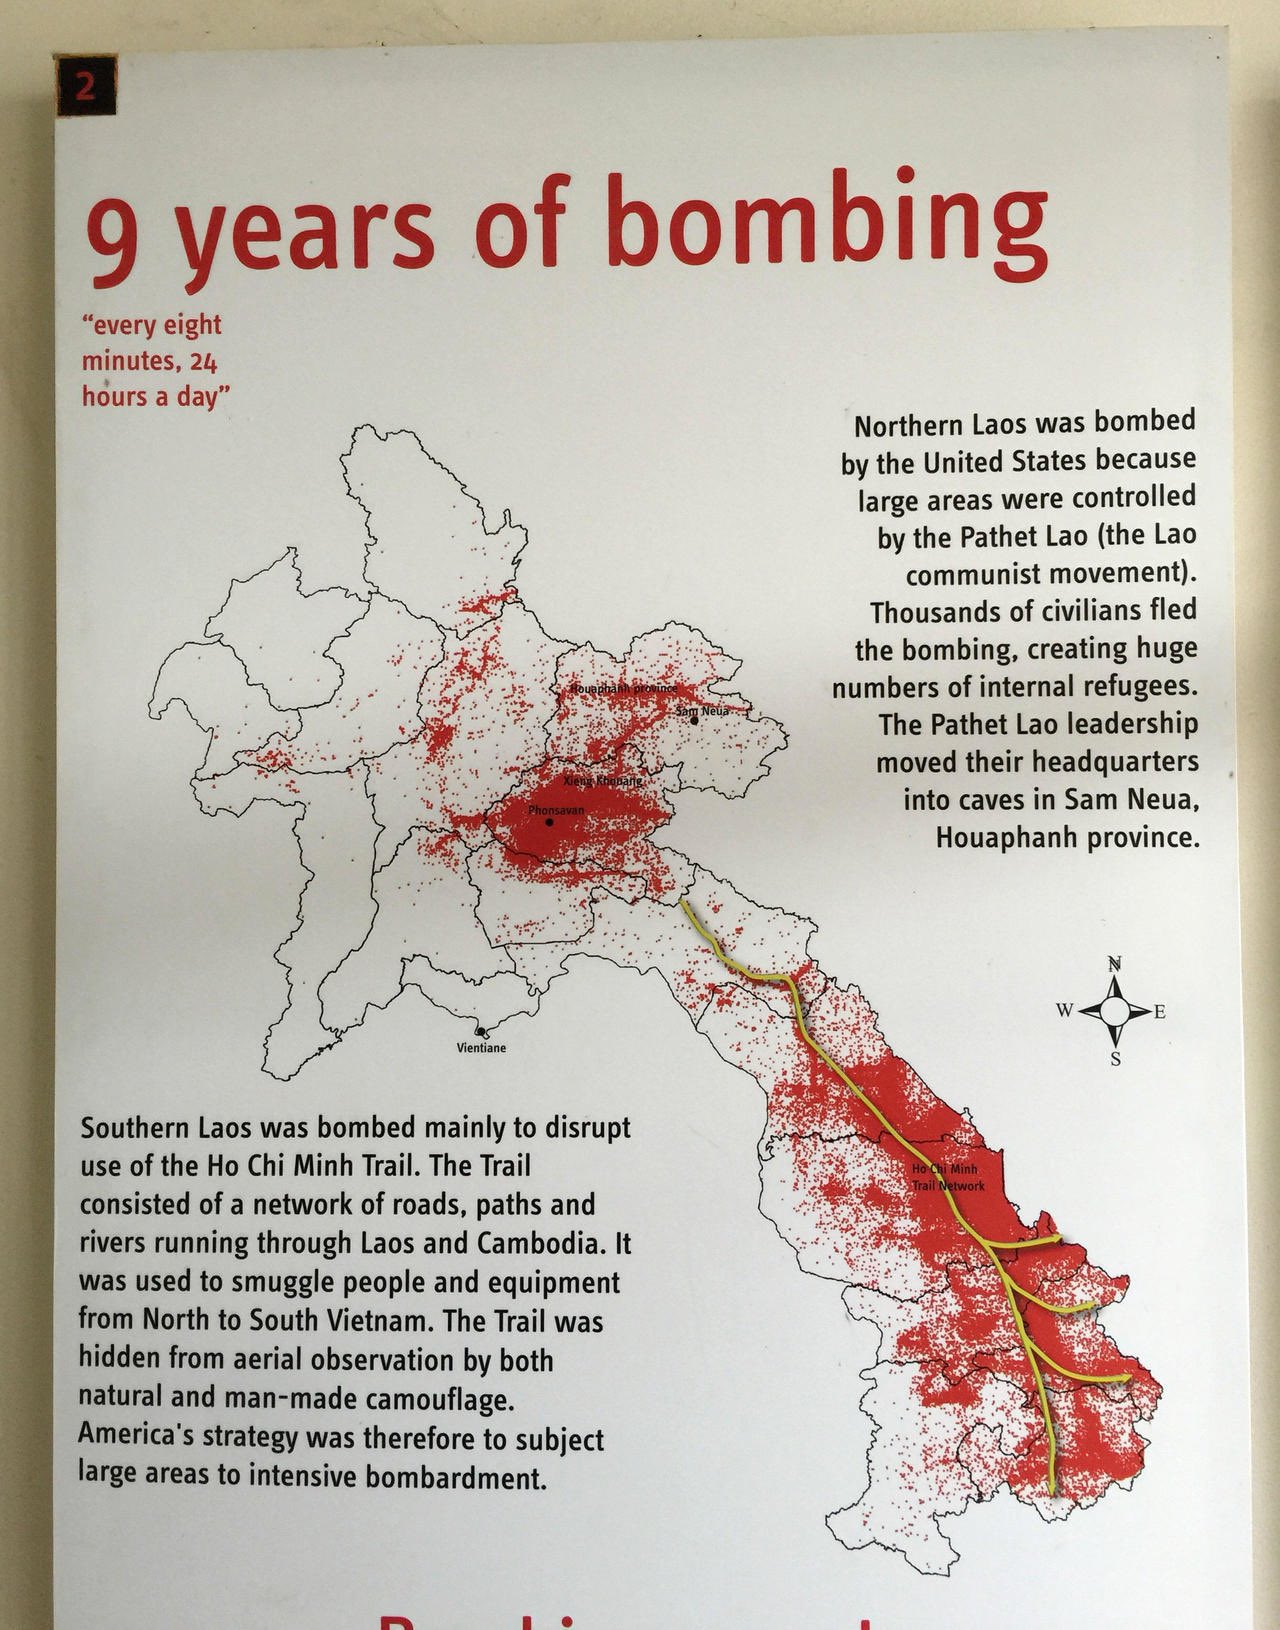 Zur Erinnerung: die USA haben 270 Millionen Cluster-Bomben auf Laos abgeworfen. 50 Jahre später sterben immer noch Zivilisten.